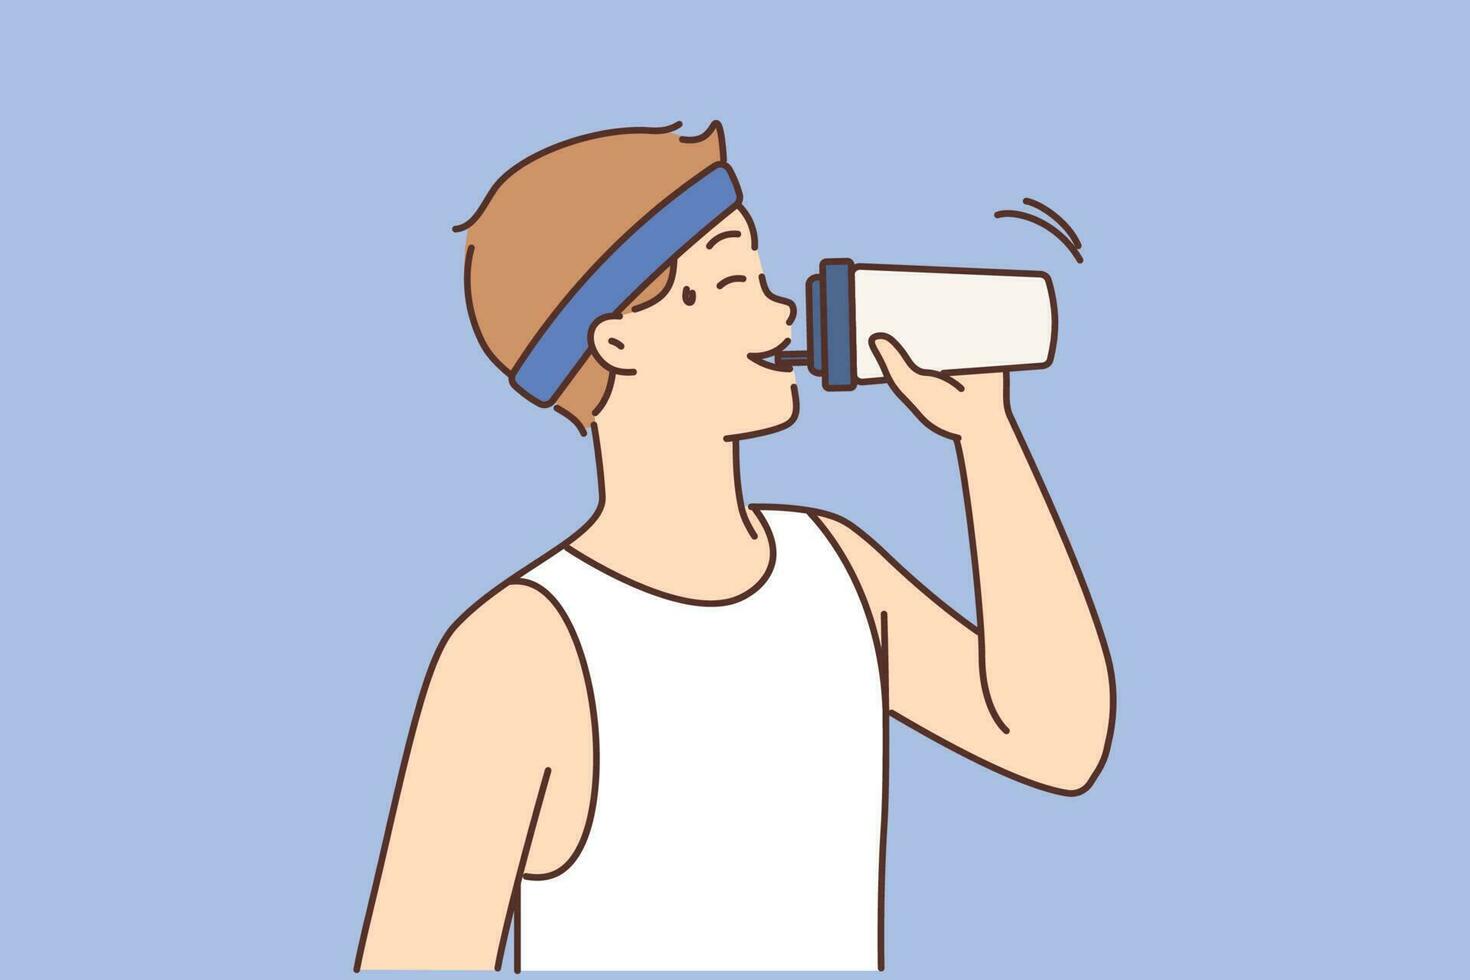 durstig jung Mann trinken Wasser müde nach Laufen oder trainieren. erschöpft Kerl genießen Getränk Ausbildung oder trainieren. Vektor Illustration.